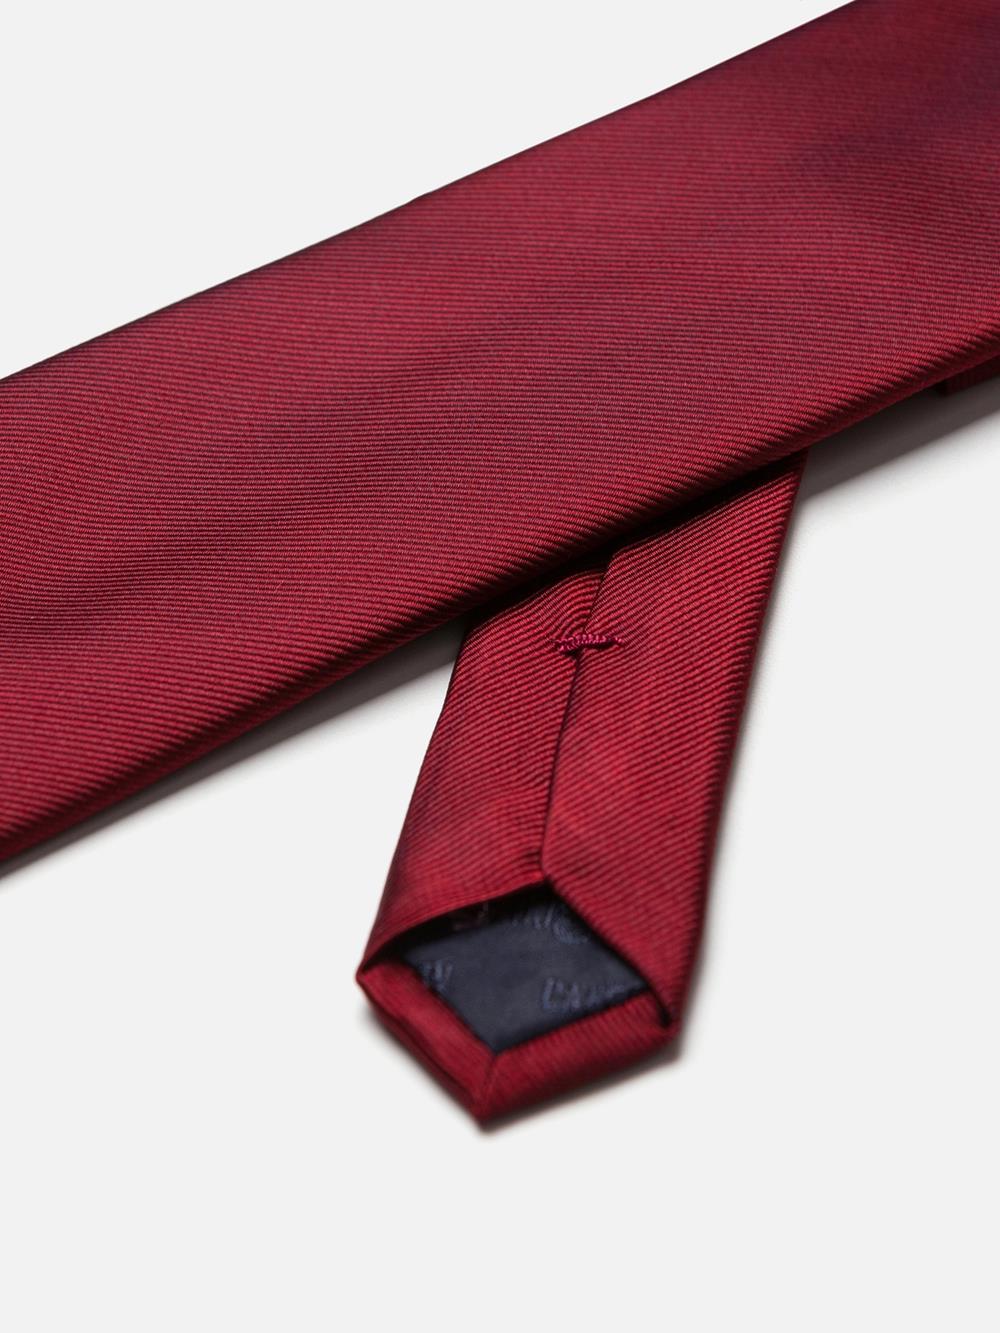 Corbata en sarga de seda roja